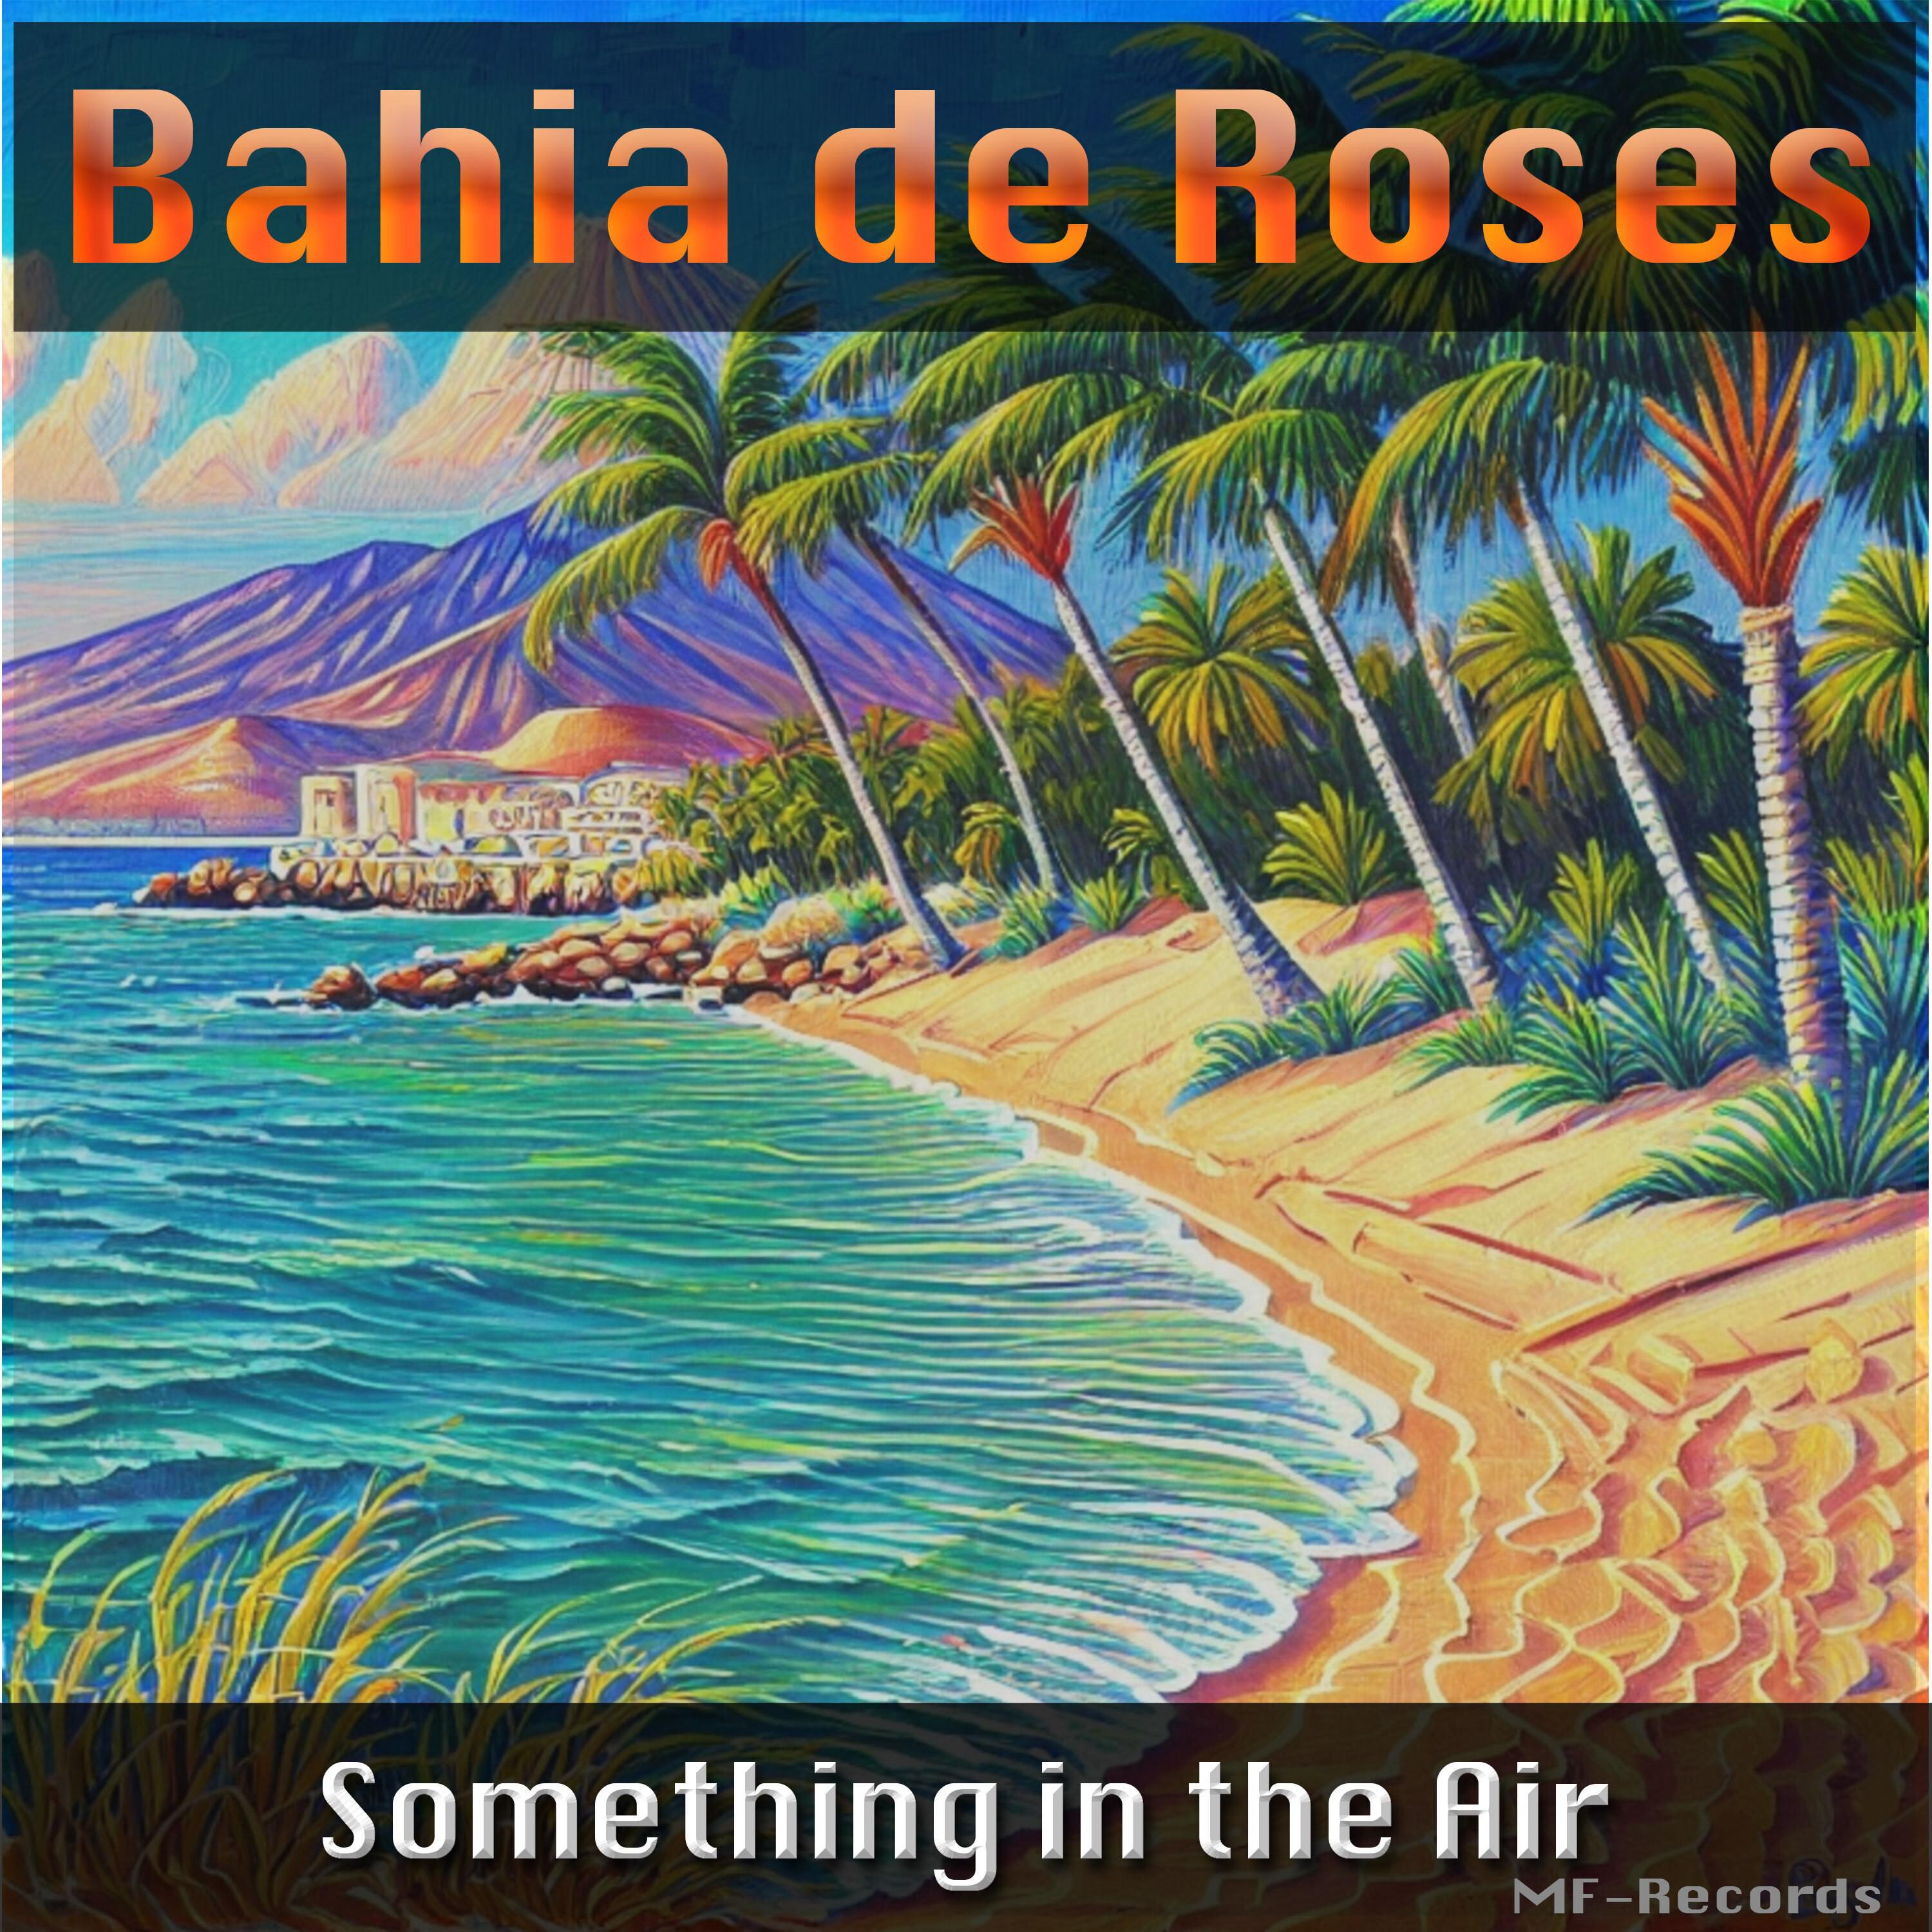 Bahia de Roses - Let Us Have a World